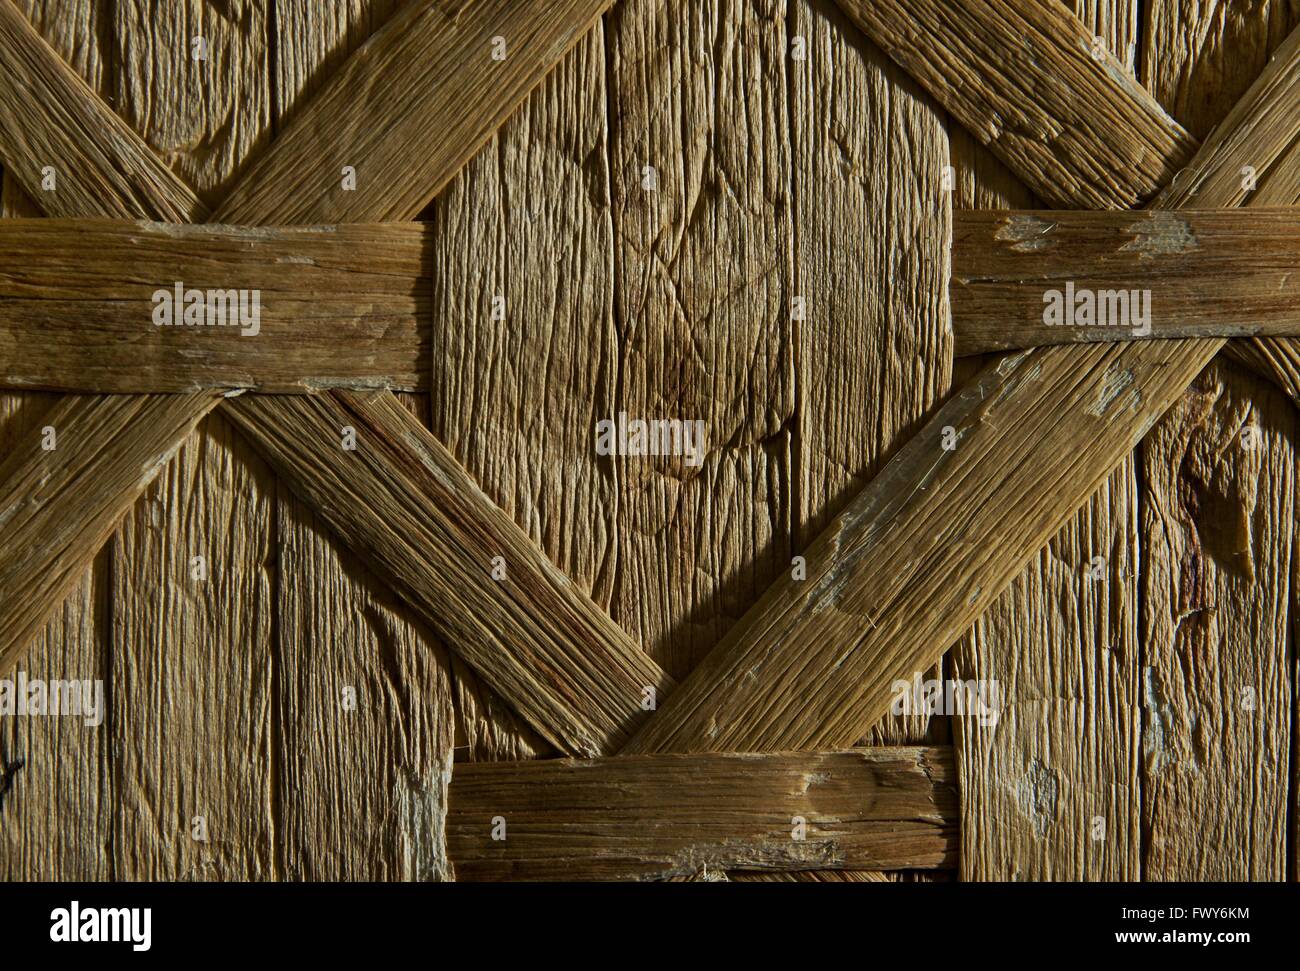 Vieux reed surface texture en position feu Banque D'Images